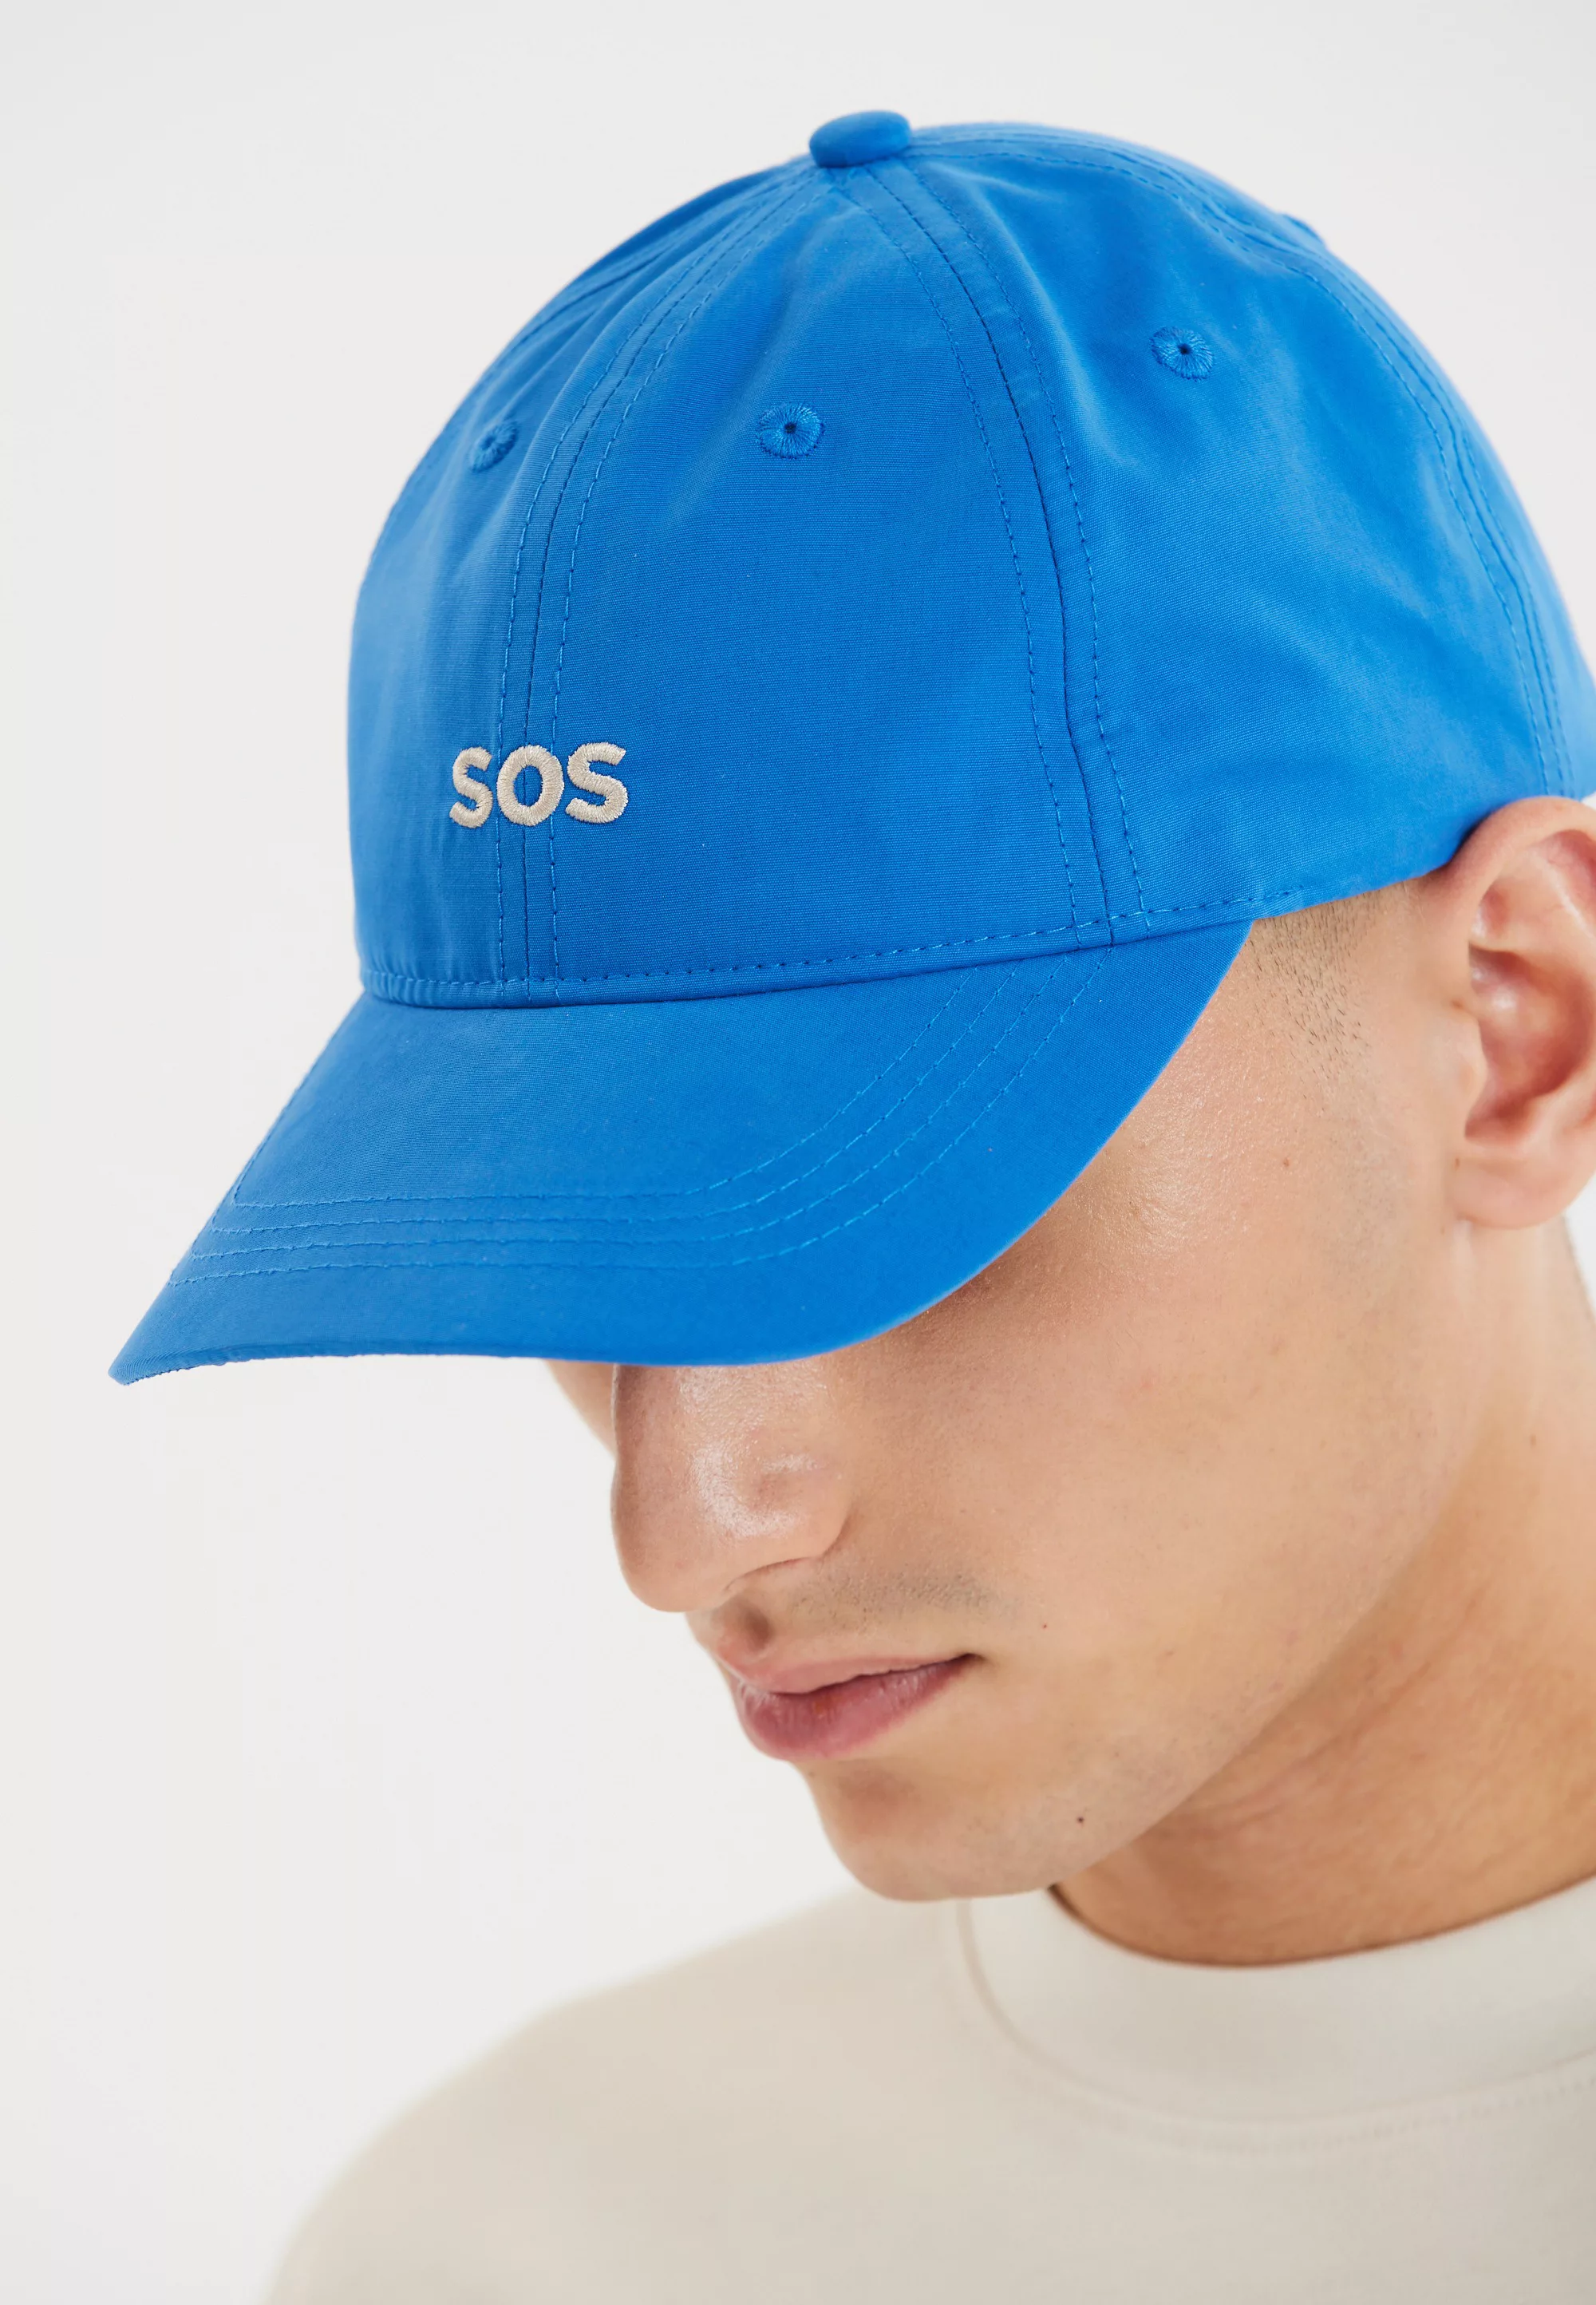 SOS Baseball Cap "Nordals", mit vielseitigen Einsatzmöglichkeiten günstig online kaufen